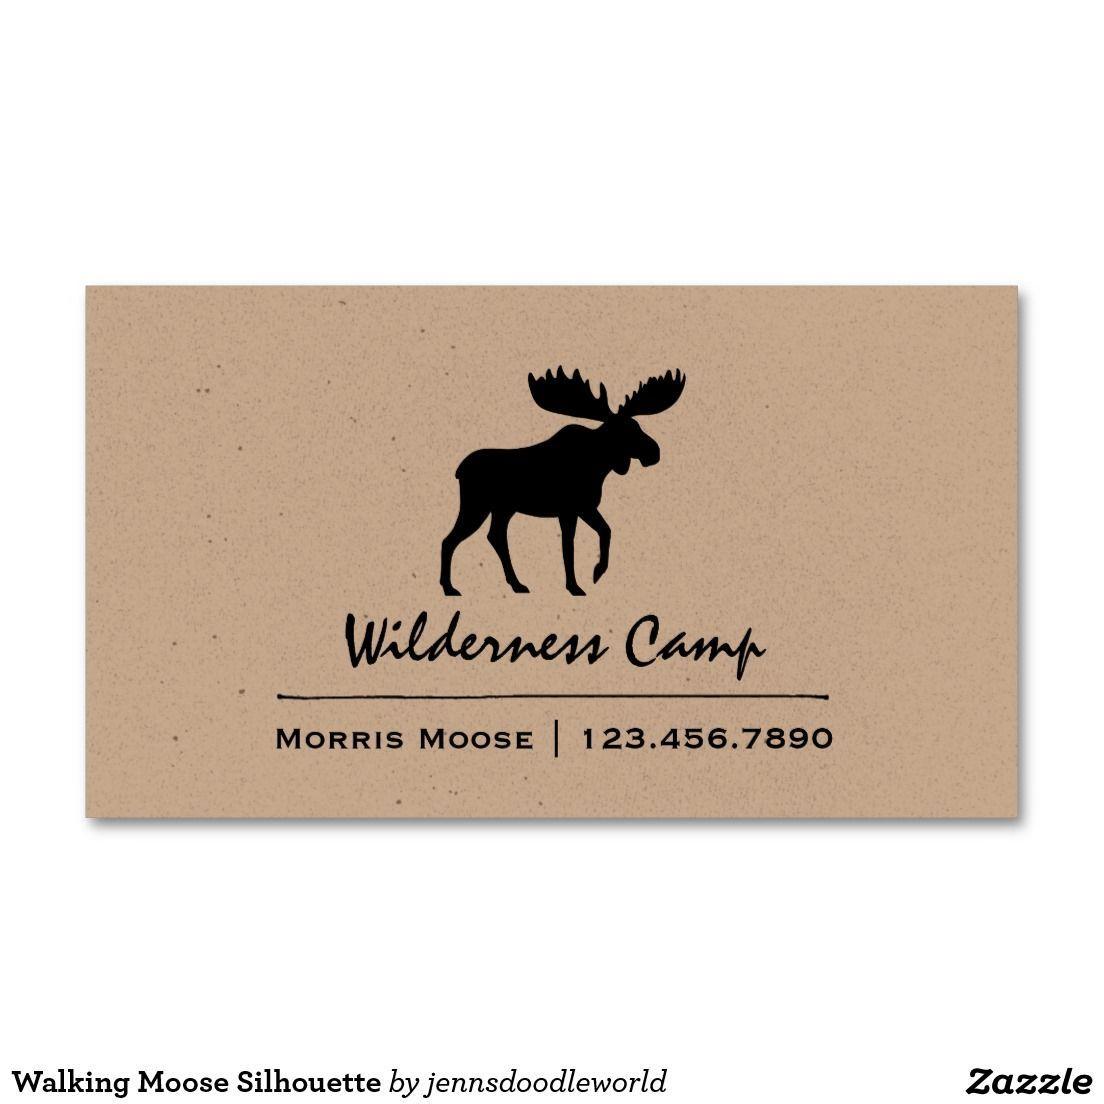 100 Moose Logo - Walking Moose Silhouette Business Card. Wildlife